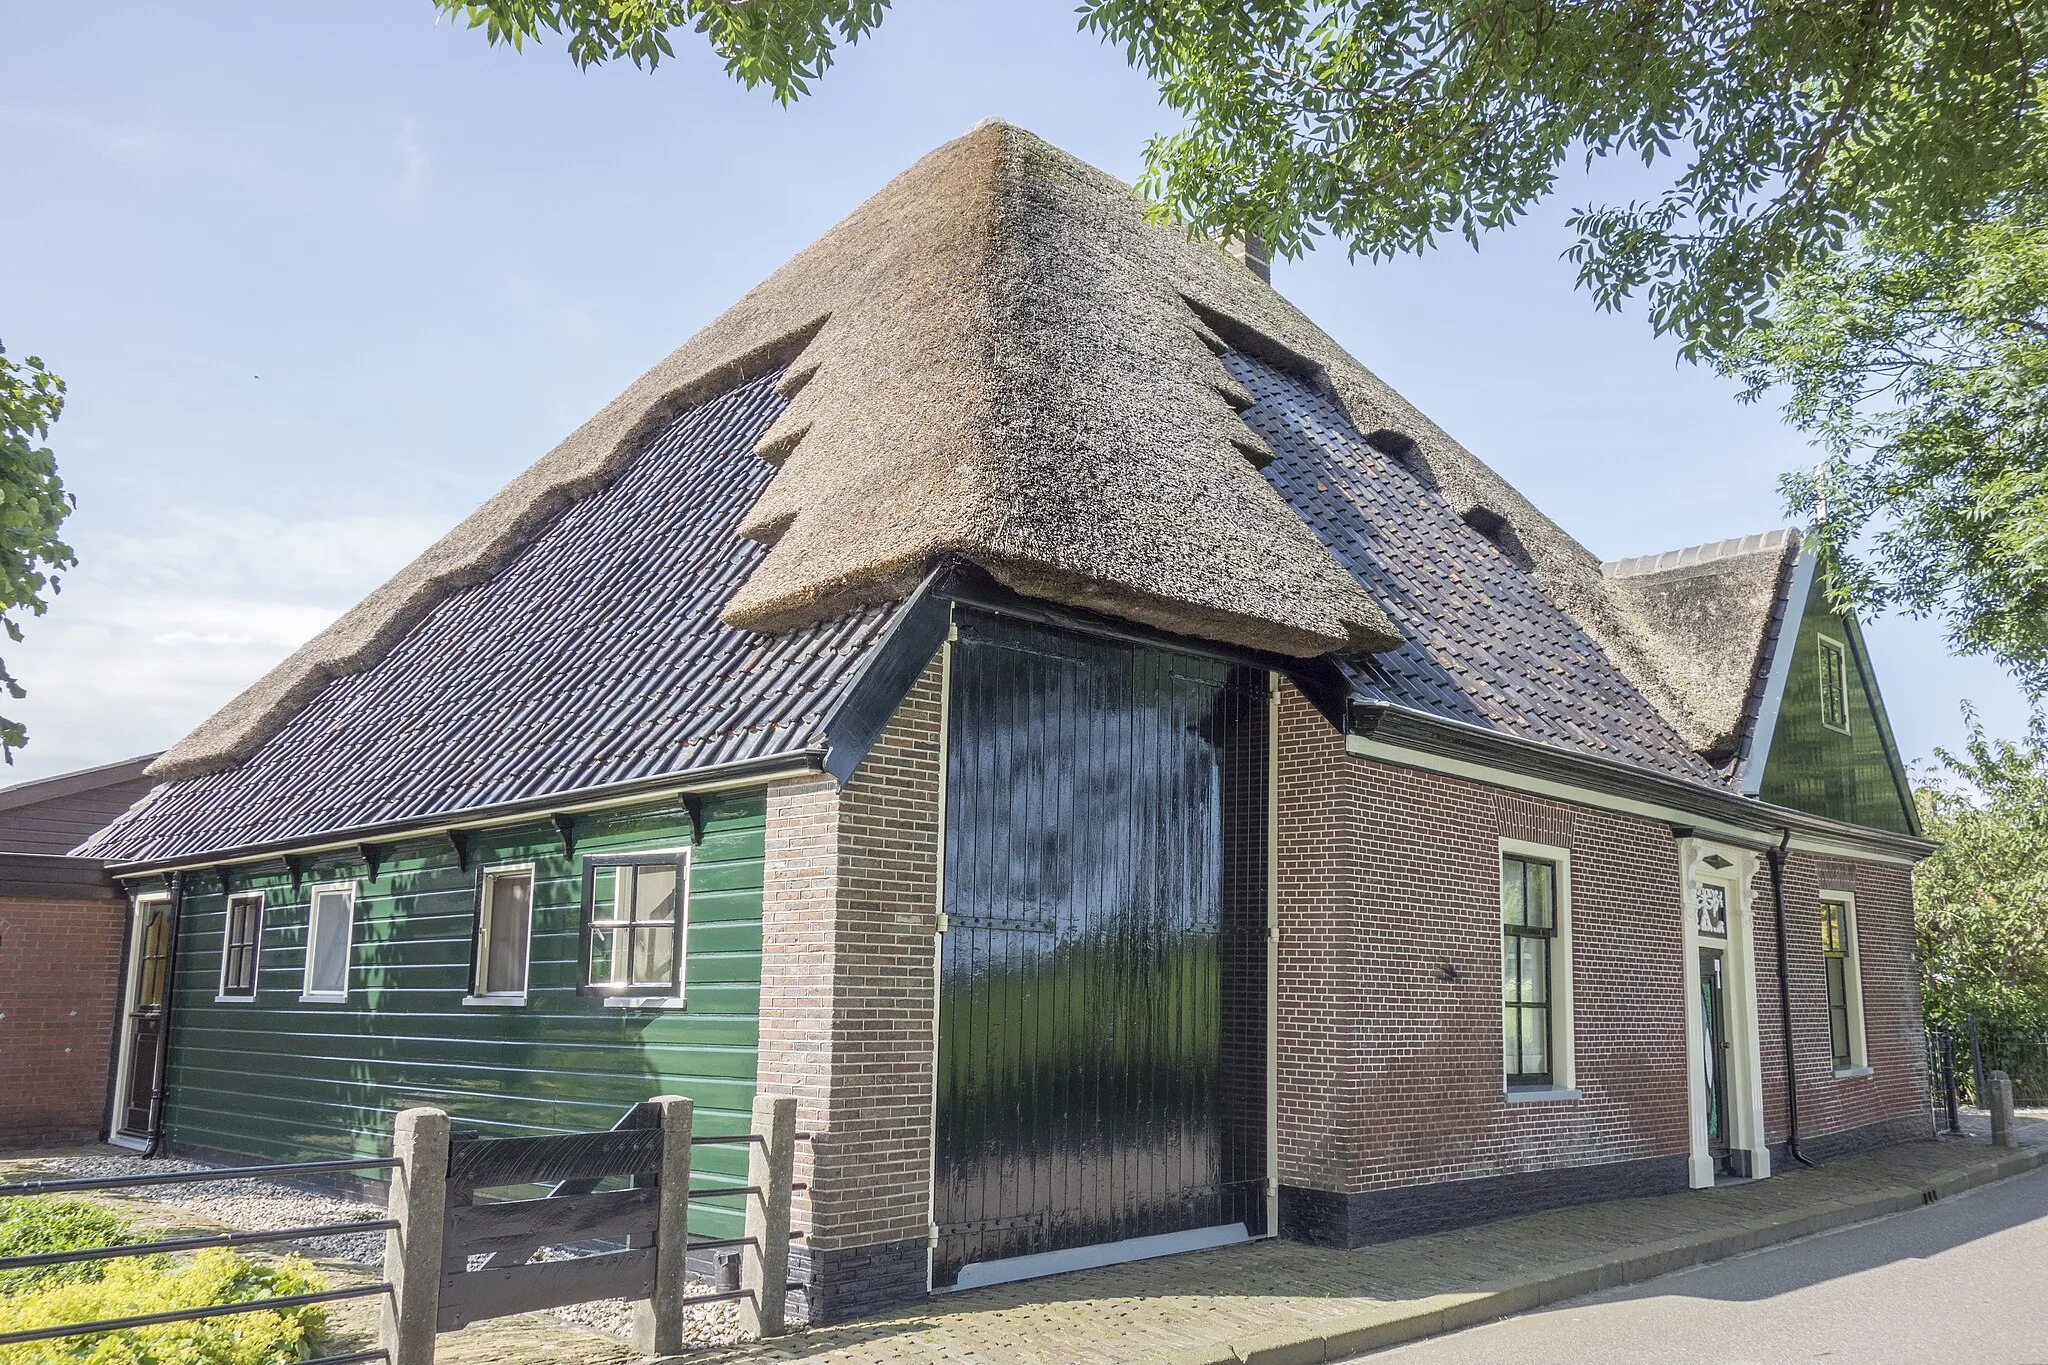 Photo showing: Stolpboerderij aan de Dorpsstraat 26 in het Noord-Hollandse Oude Niedorp. Stolp is een provinciaal monument.